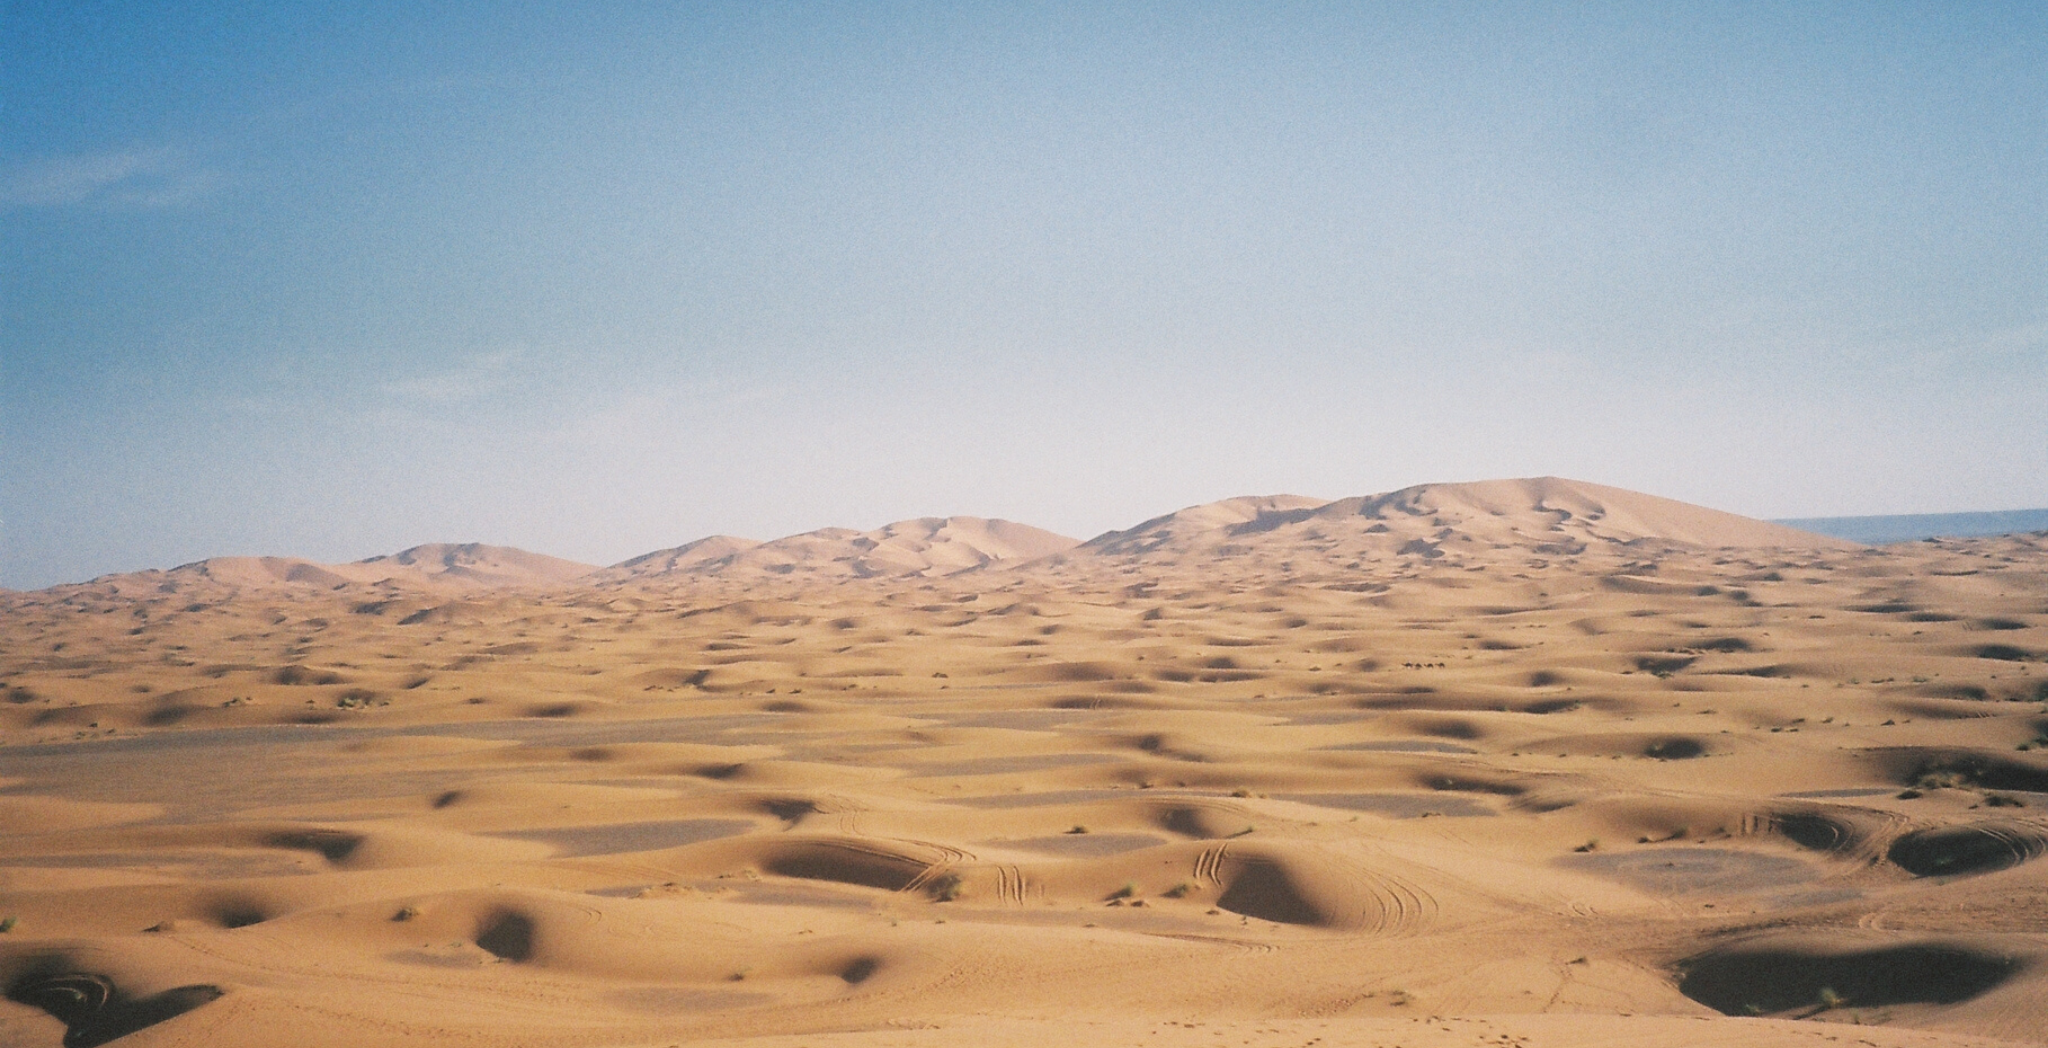 Morocco on film the Sahara Desert